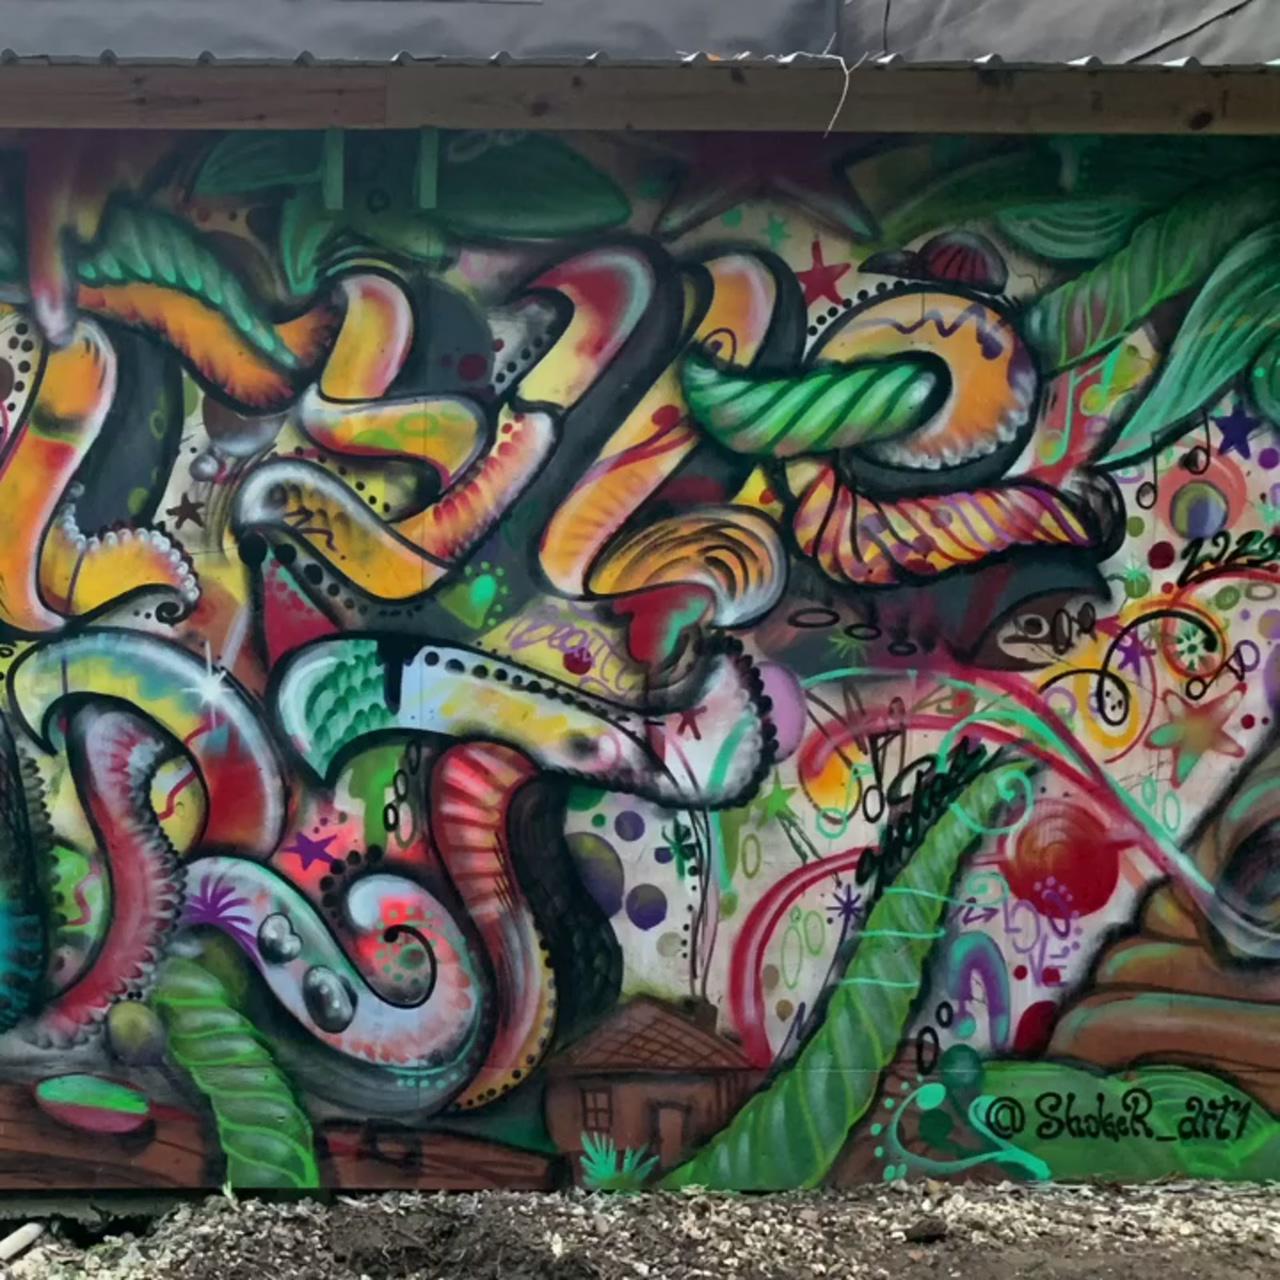 Graffiti free style art by shoker; graffiti pattern shoker style wallpaper, background